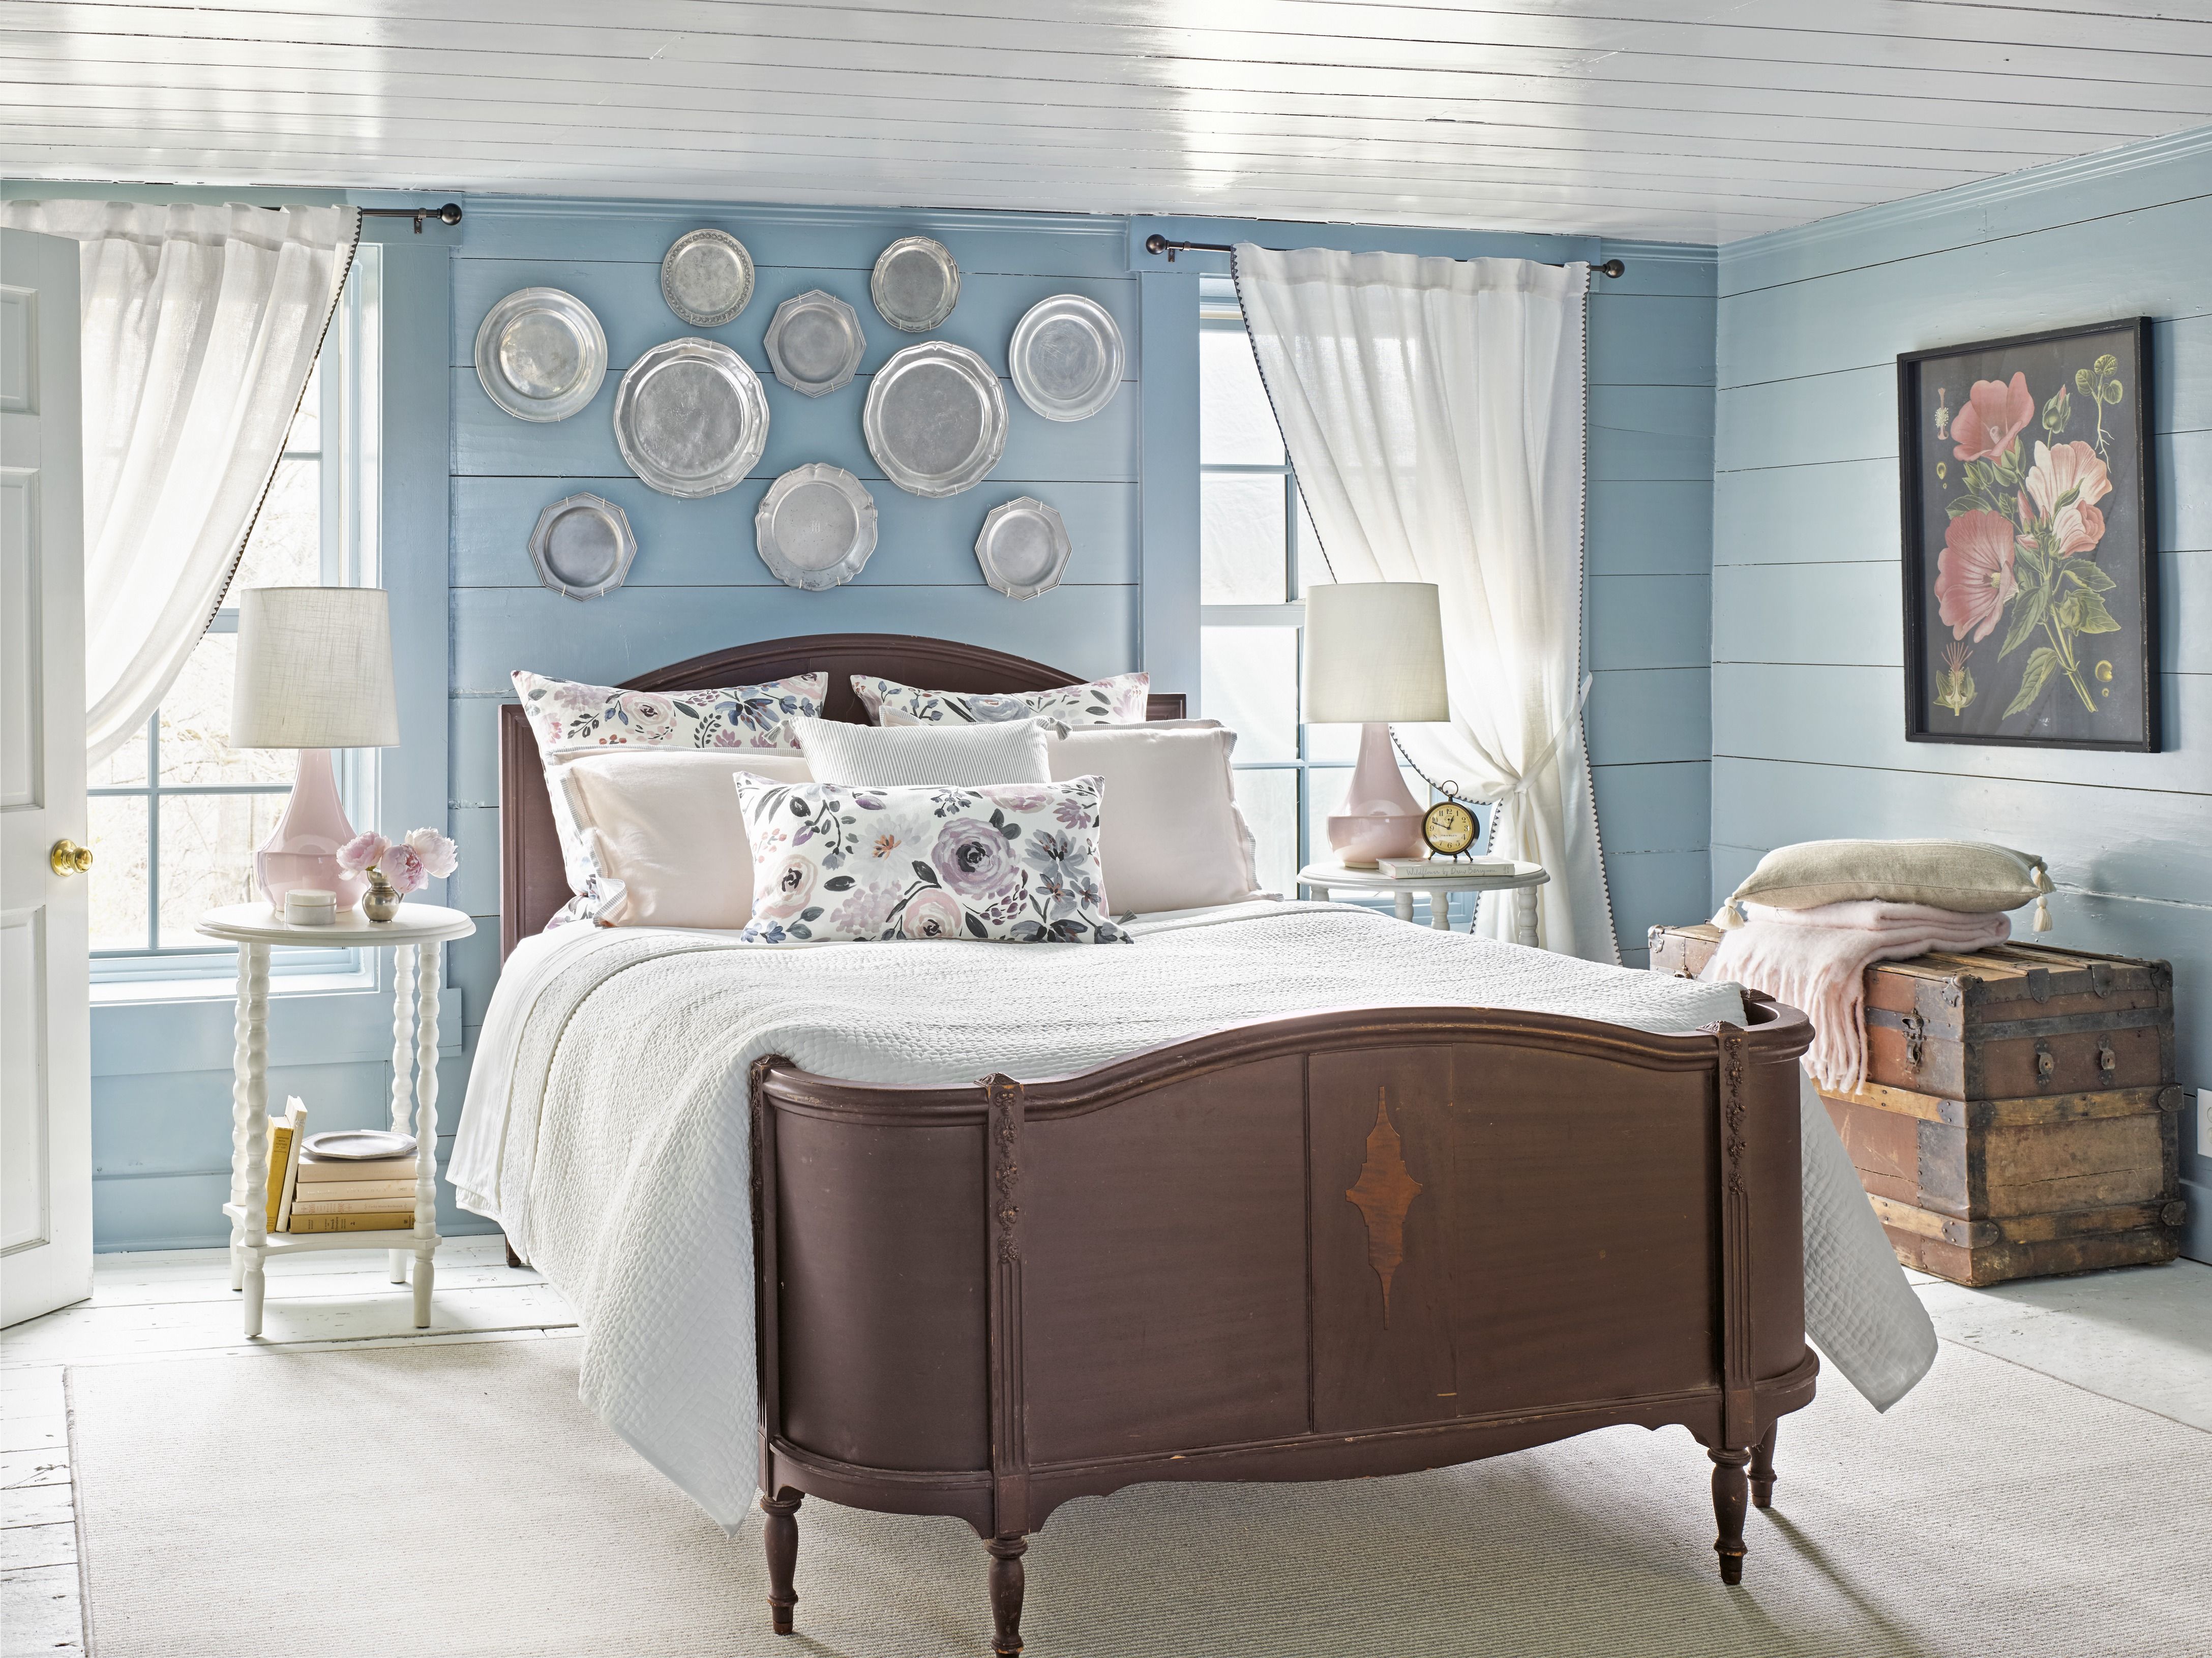 16 Best Blue Paint Colors - Blue Paint Colors for Your Bedroom